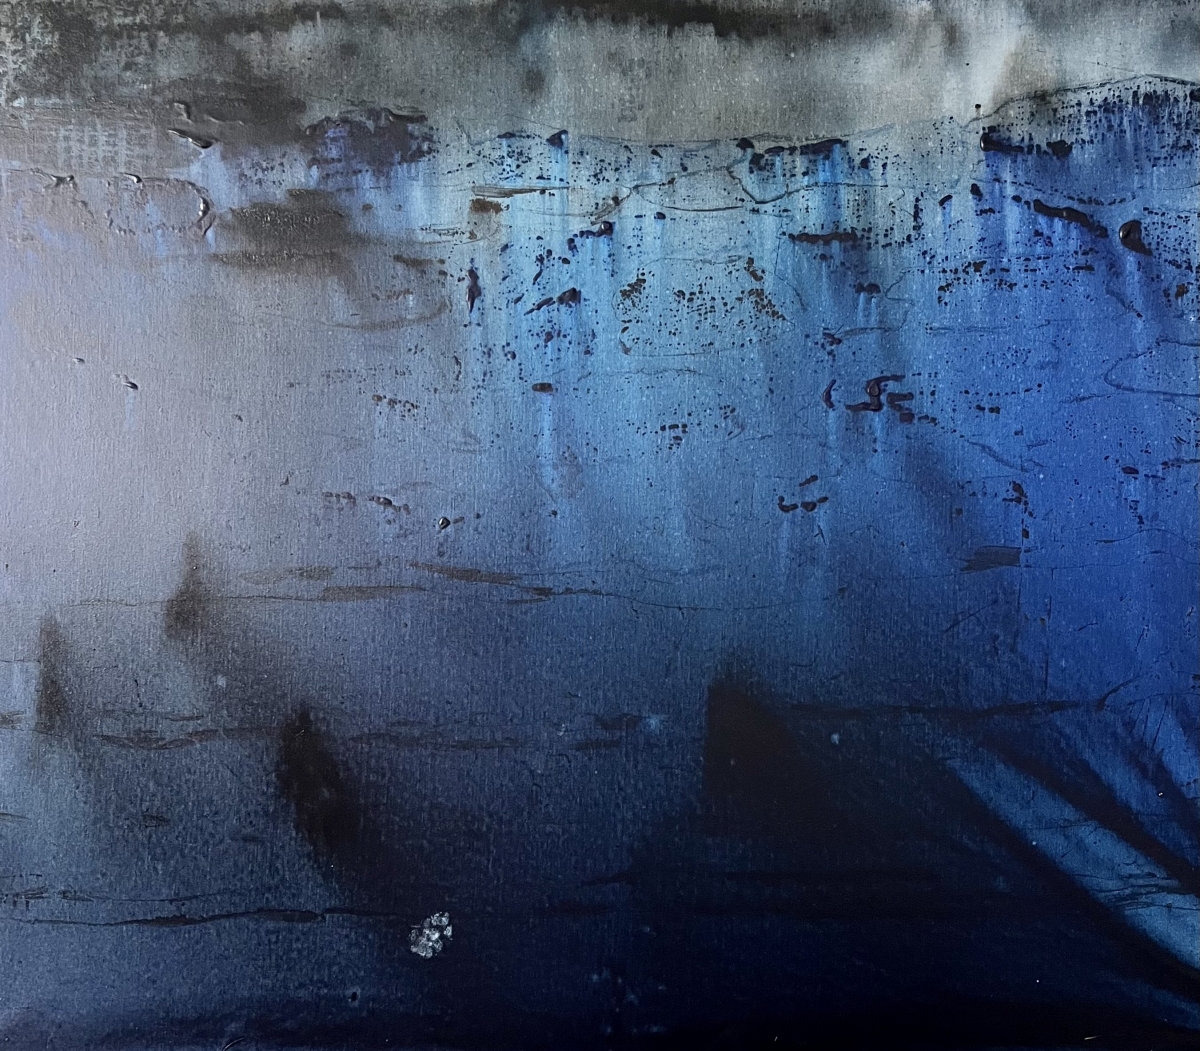 Modré moře v dešti (Kočičí stopa), 2021-22, akryl, plátno, 100x125cm, foto: Jan Slavík